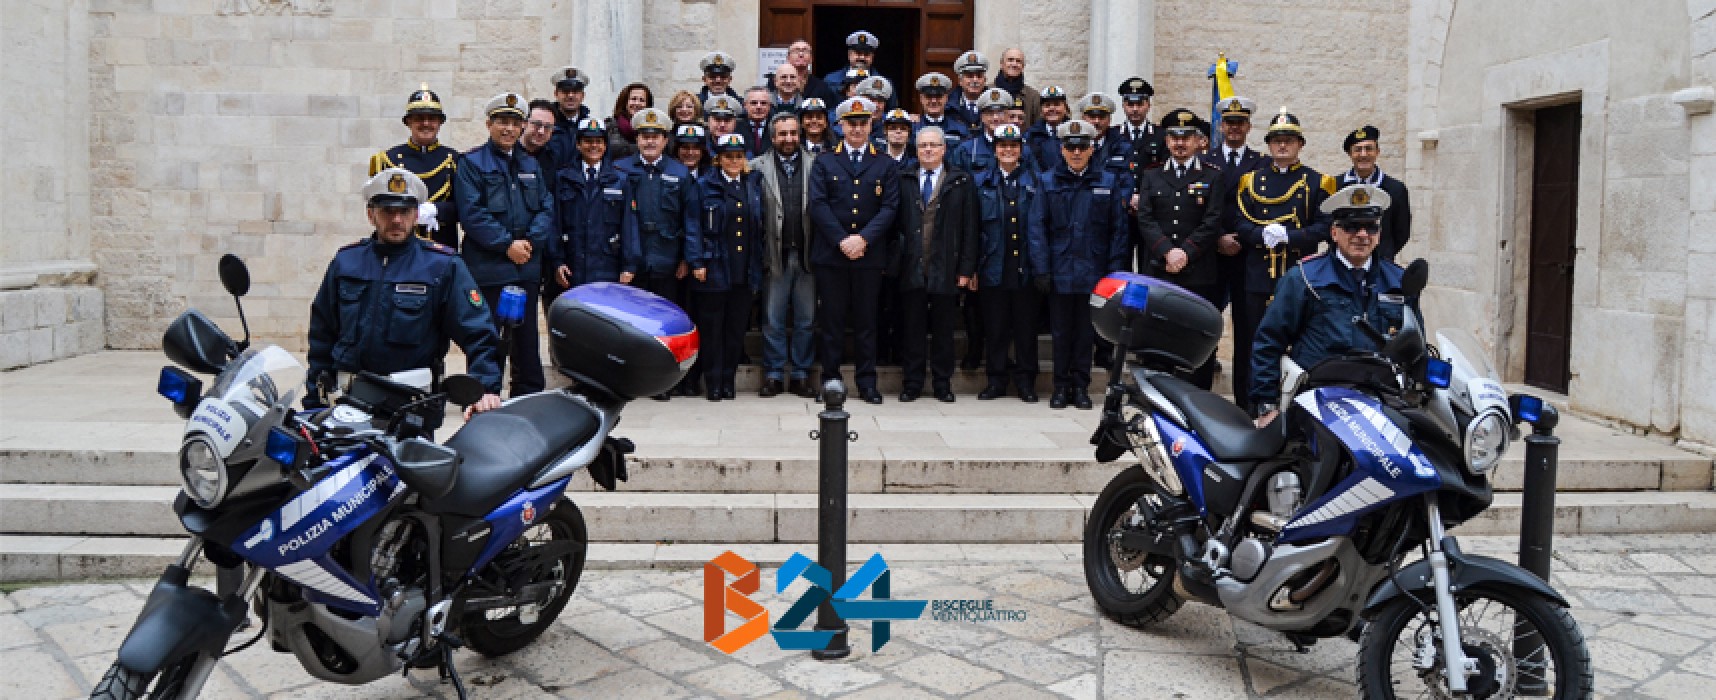 Ieri era San Sebastiano, festa della Polizia Municipale: ecco il bilancio 2014 / FOTO E CIFRE